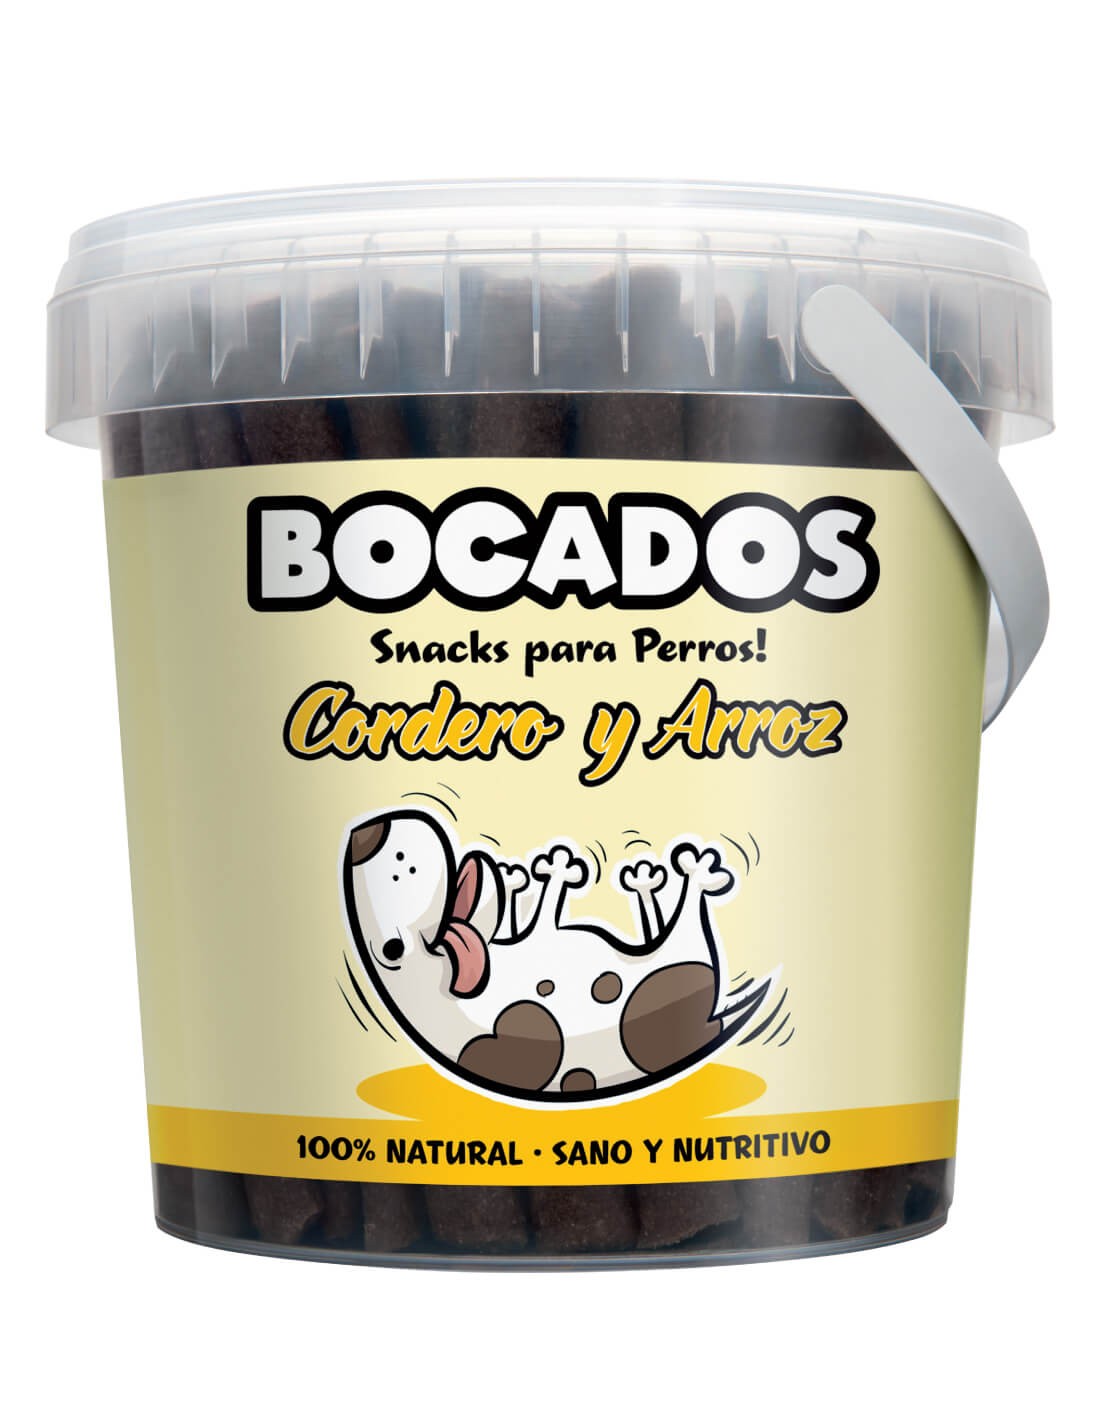 BOCADOS Cordero y Arroz snack natural para perros 300g